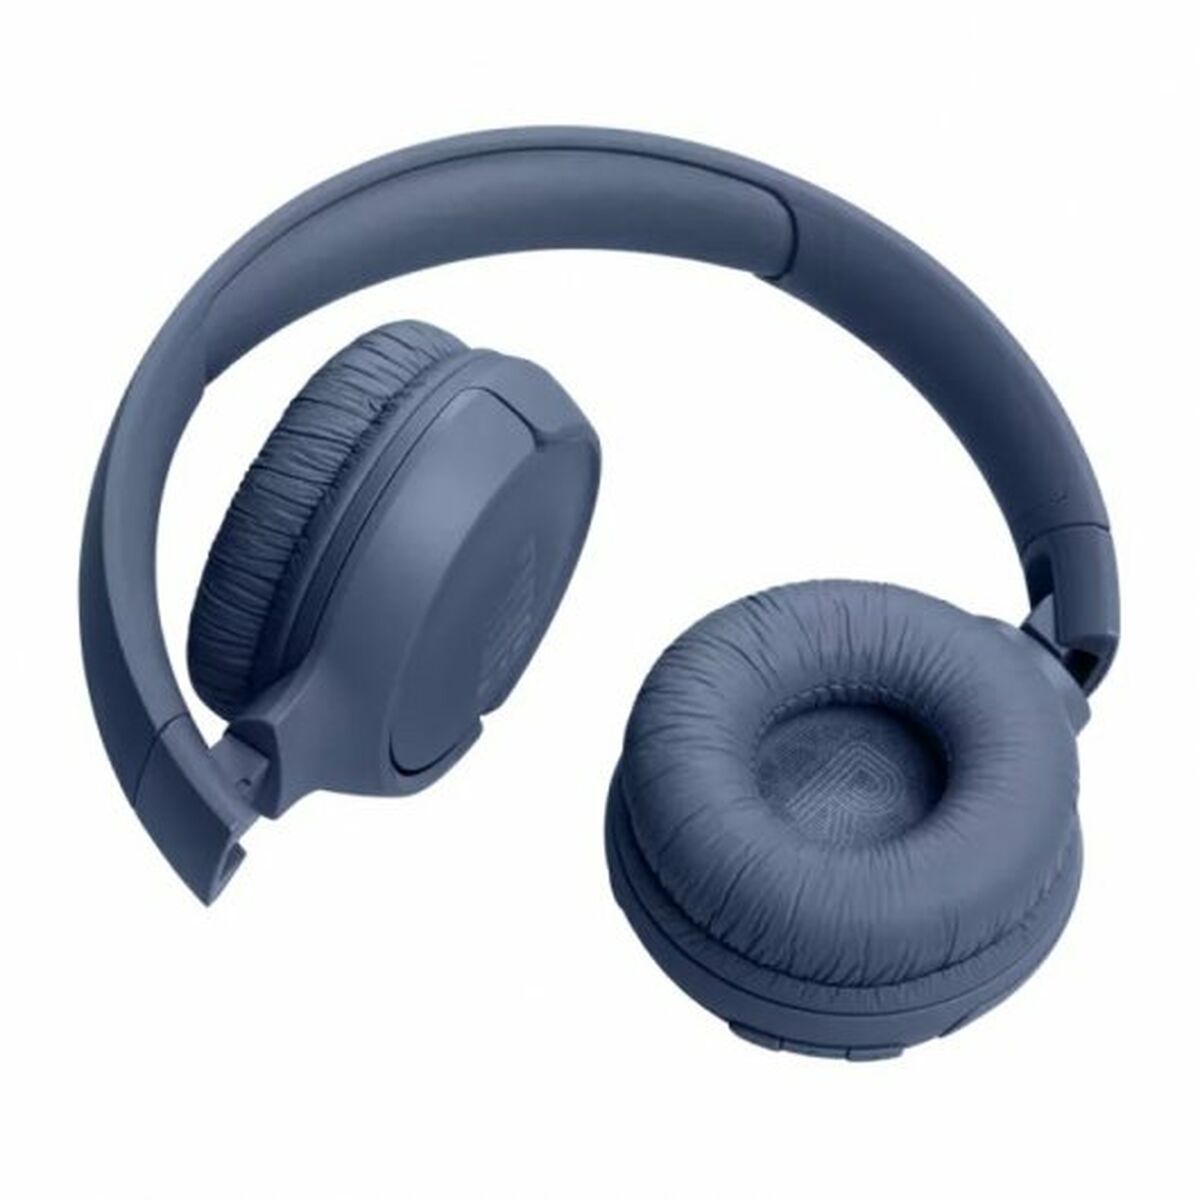 Kopfhörer mit Mikrofon JBL 520BT Blau - CA International 